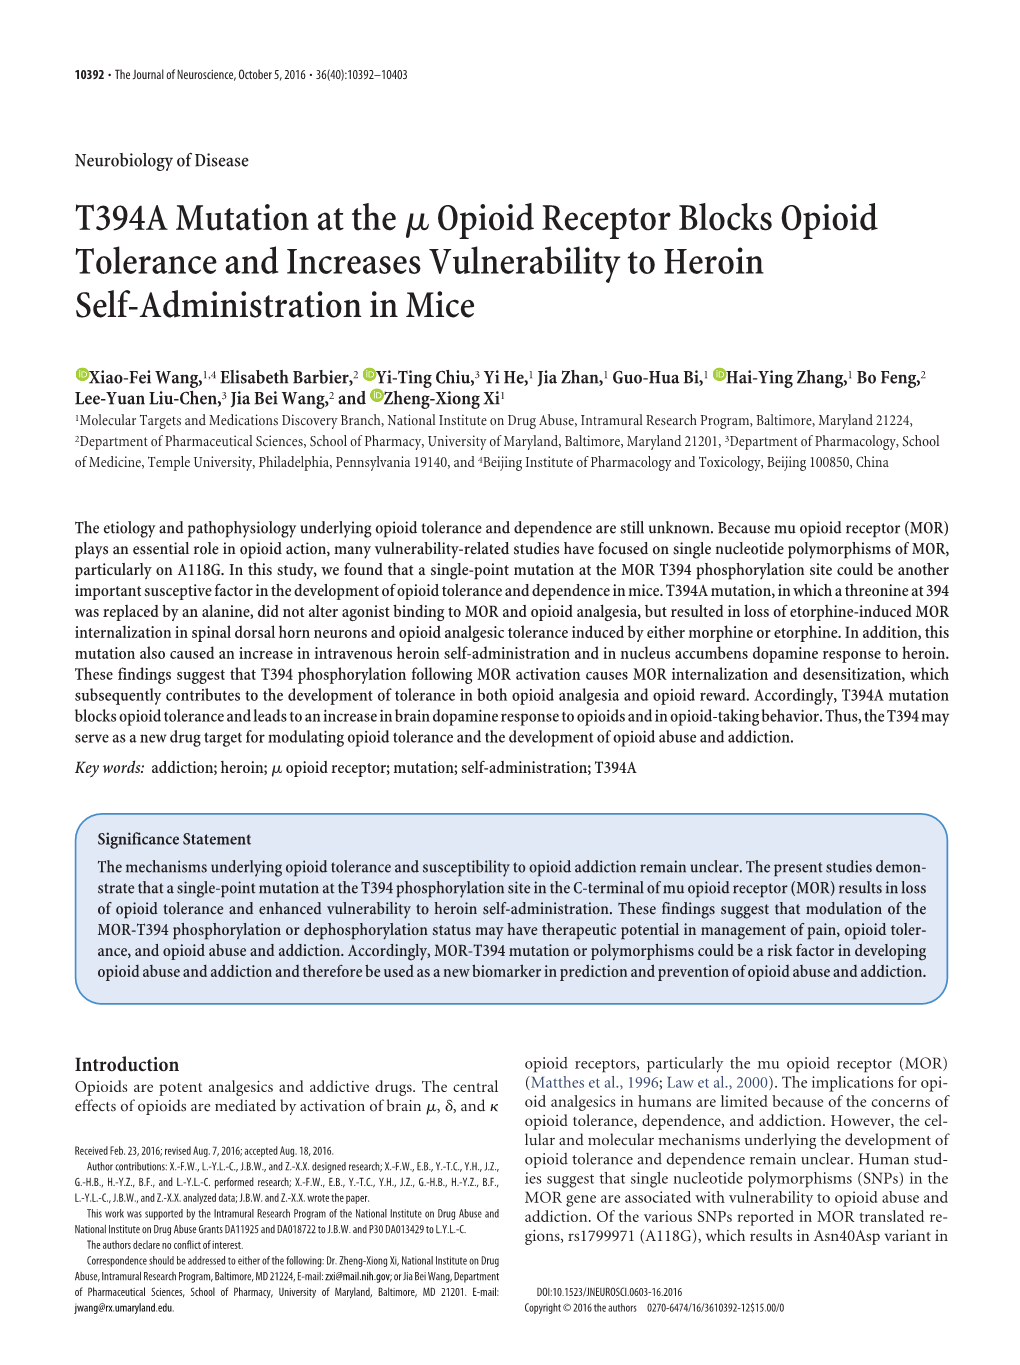 T394A Mutation at the Μ Opioid Receptor Blocks Opioid Tolerance